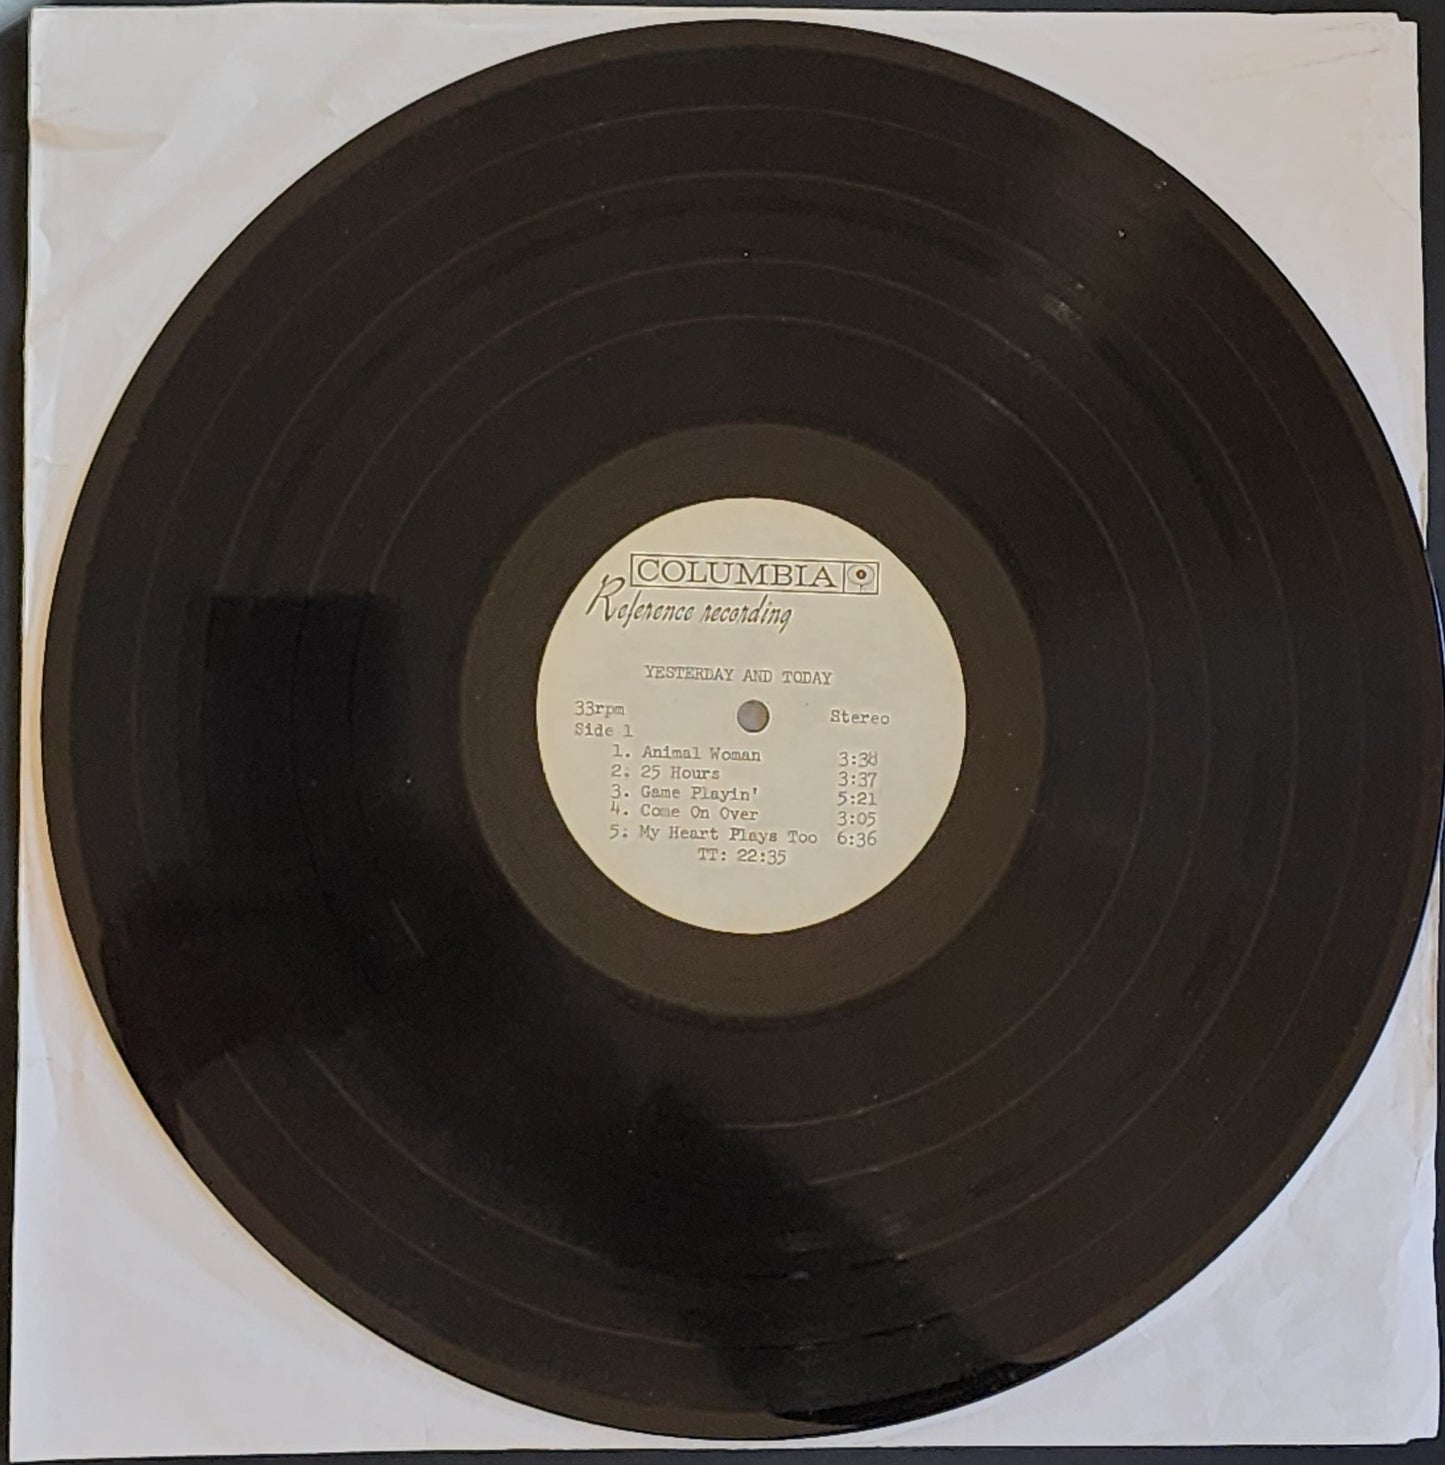 Vinyl Test Pressing - Yesterday & Today Album